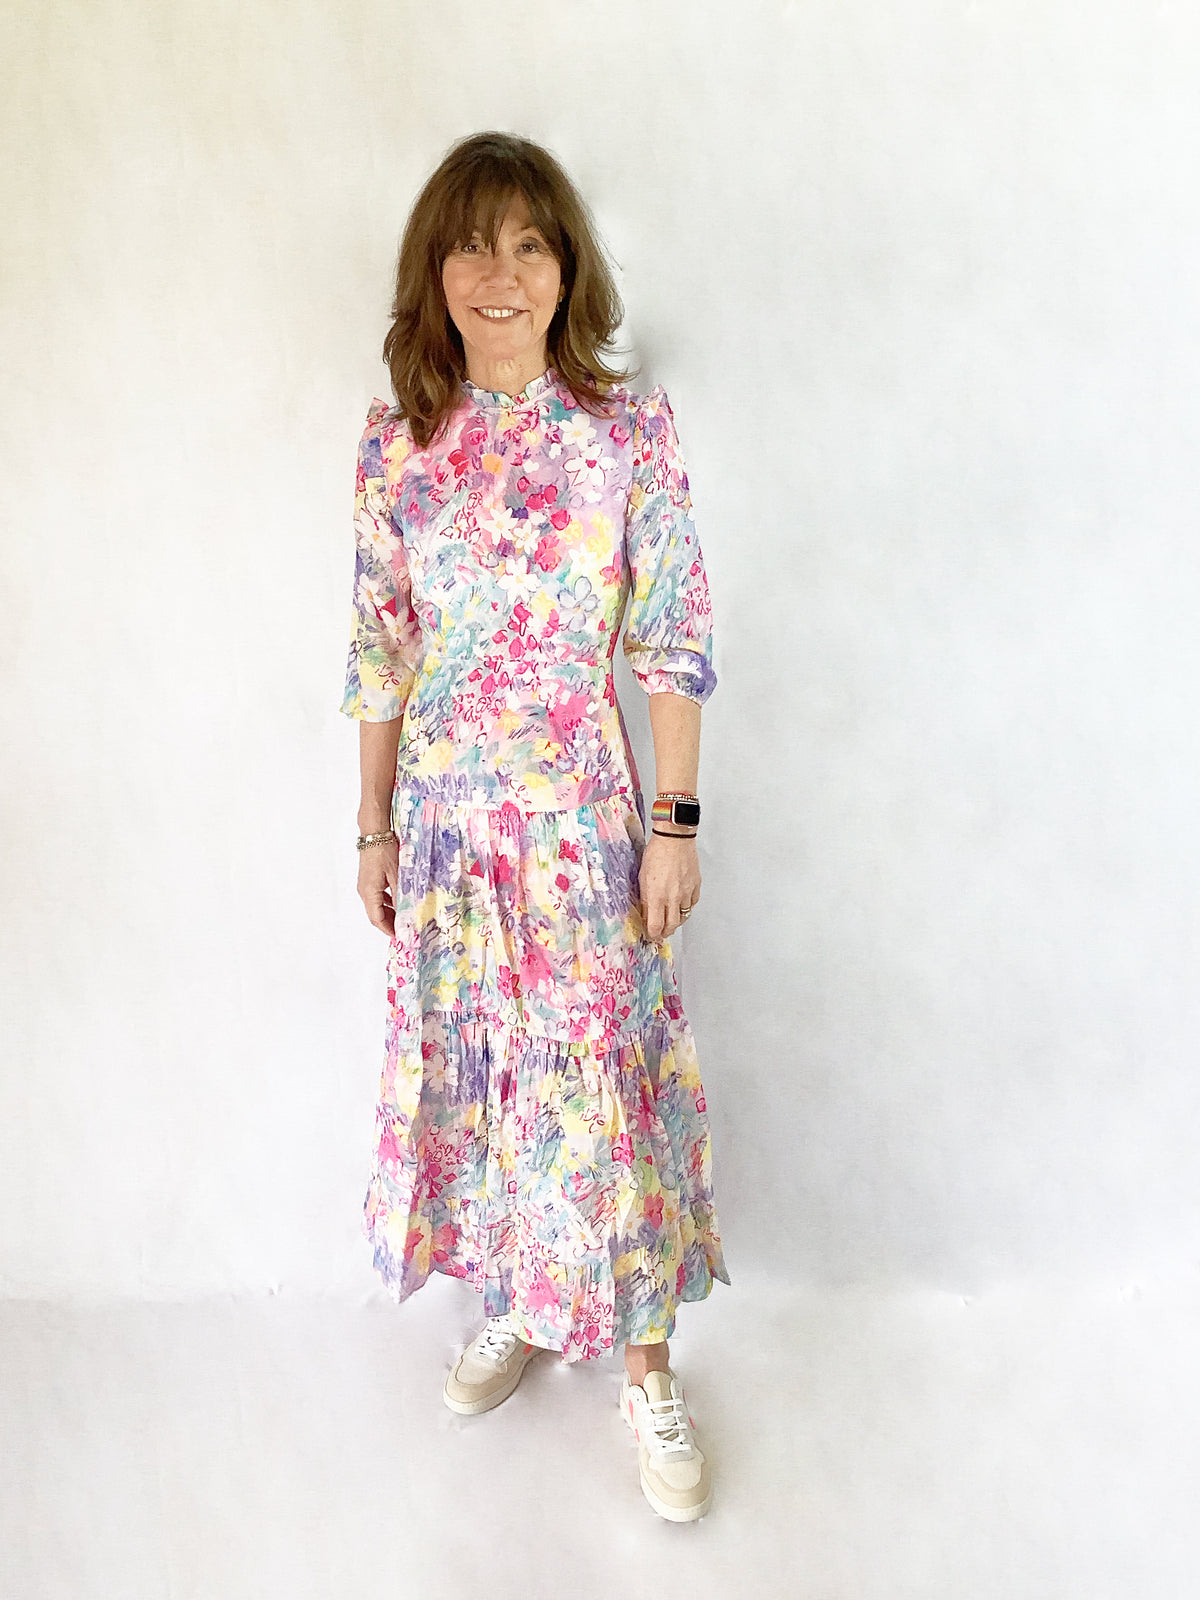 RIXO Monet Dress in Spring Meadow